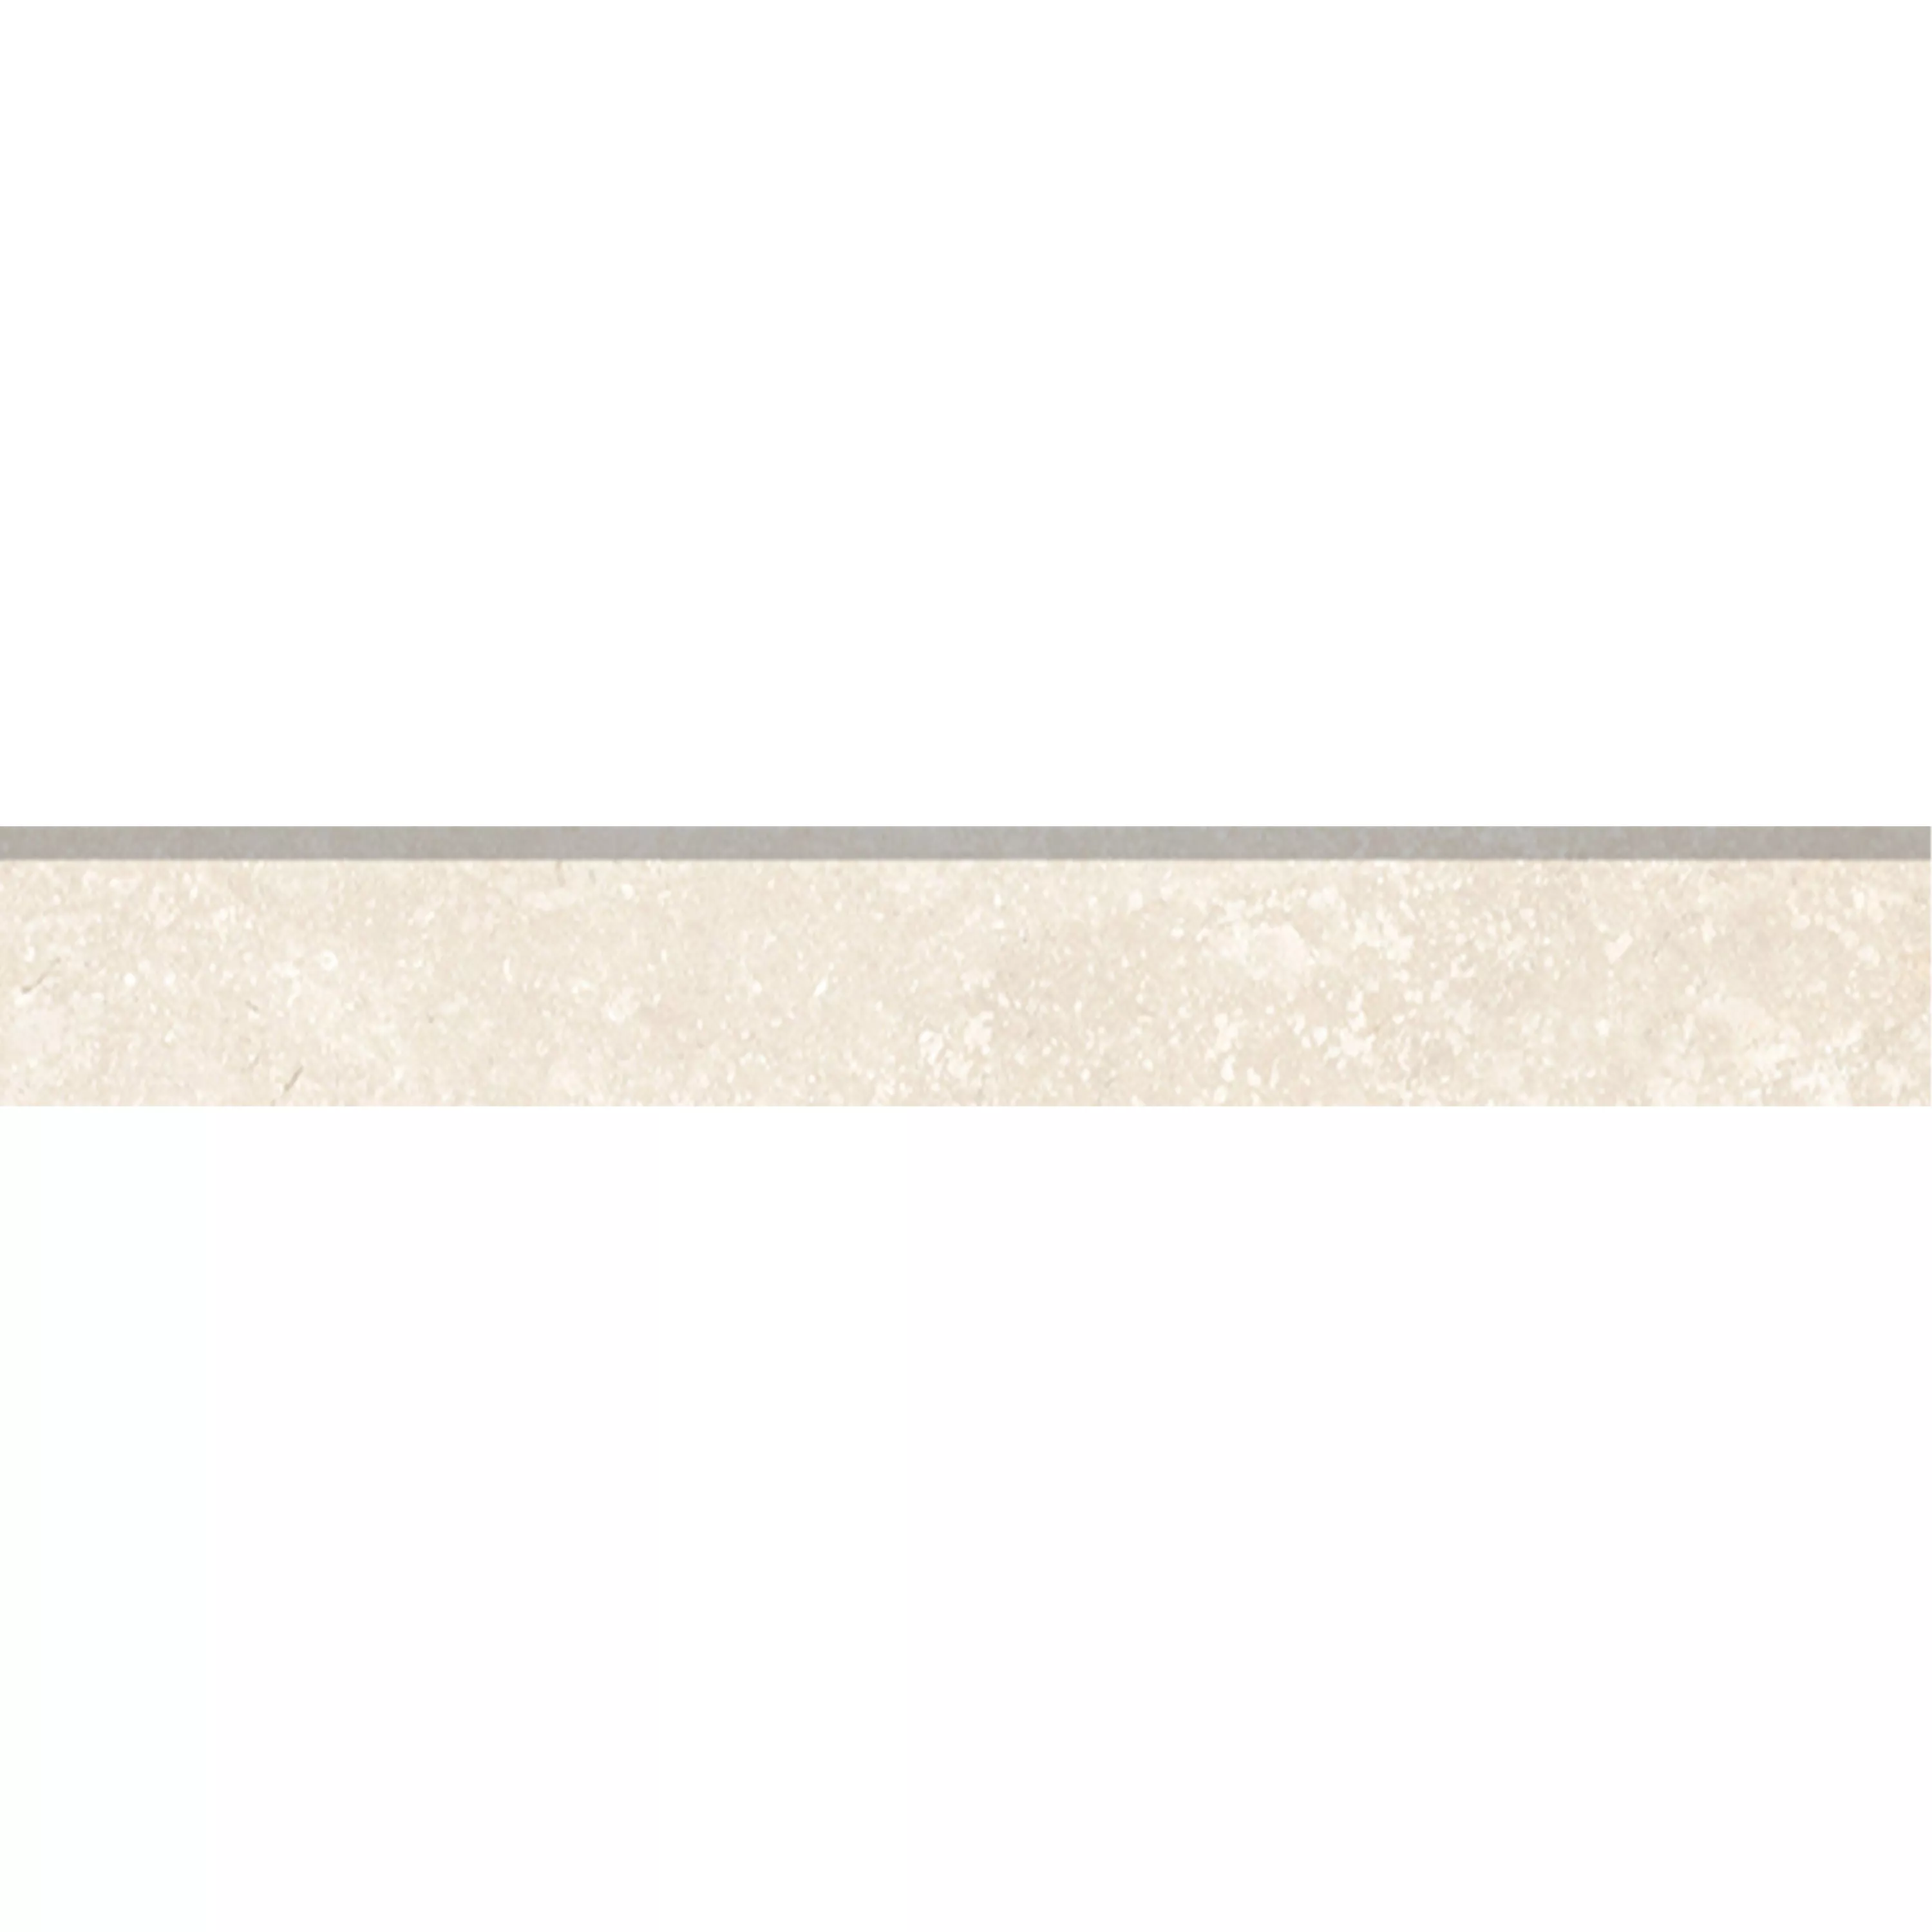 Πλακάκια Δαπέδου Pangea Μαρμάρινη Όψη Παγωμένος Cream Bάση 7x120cm